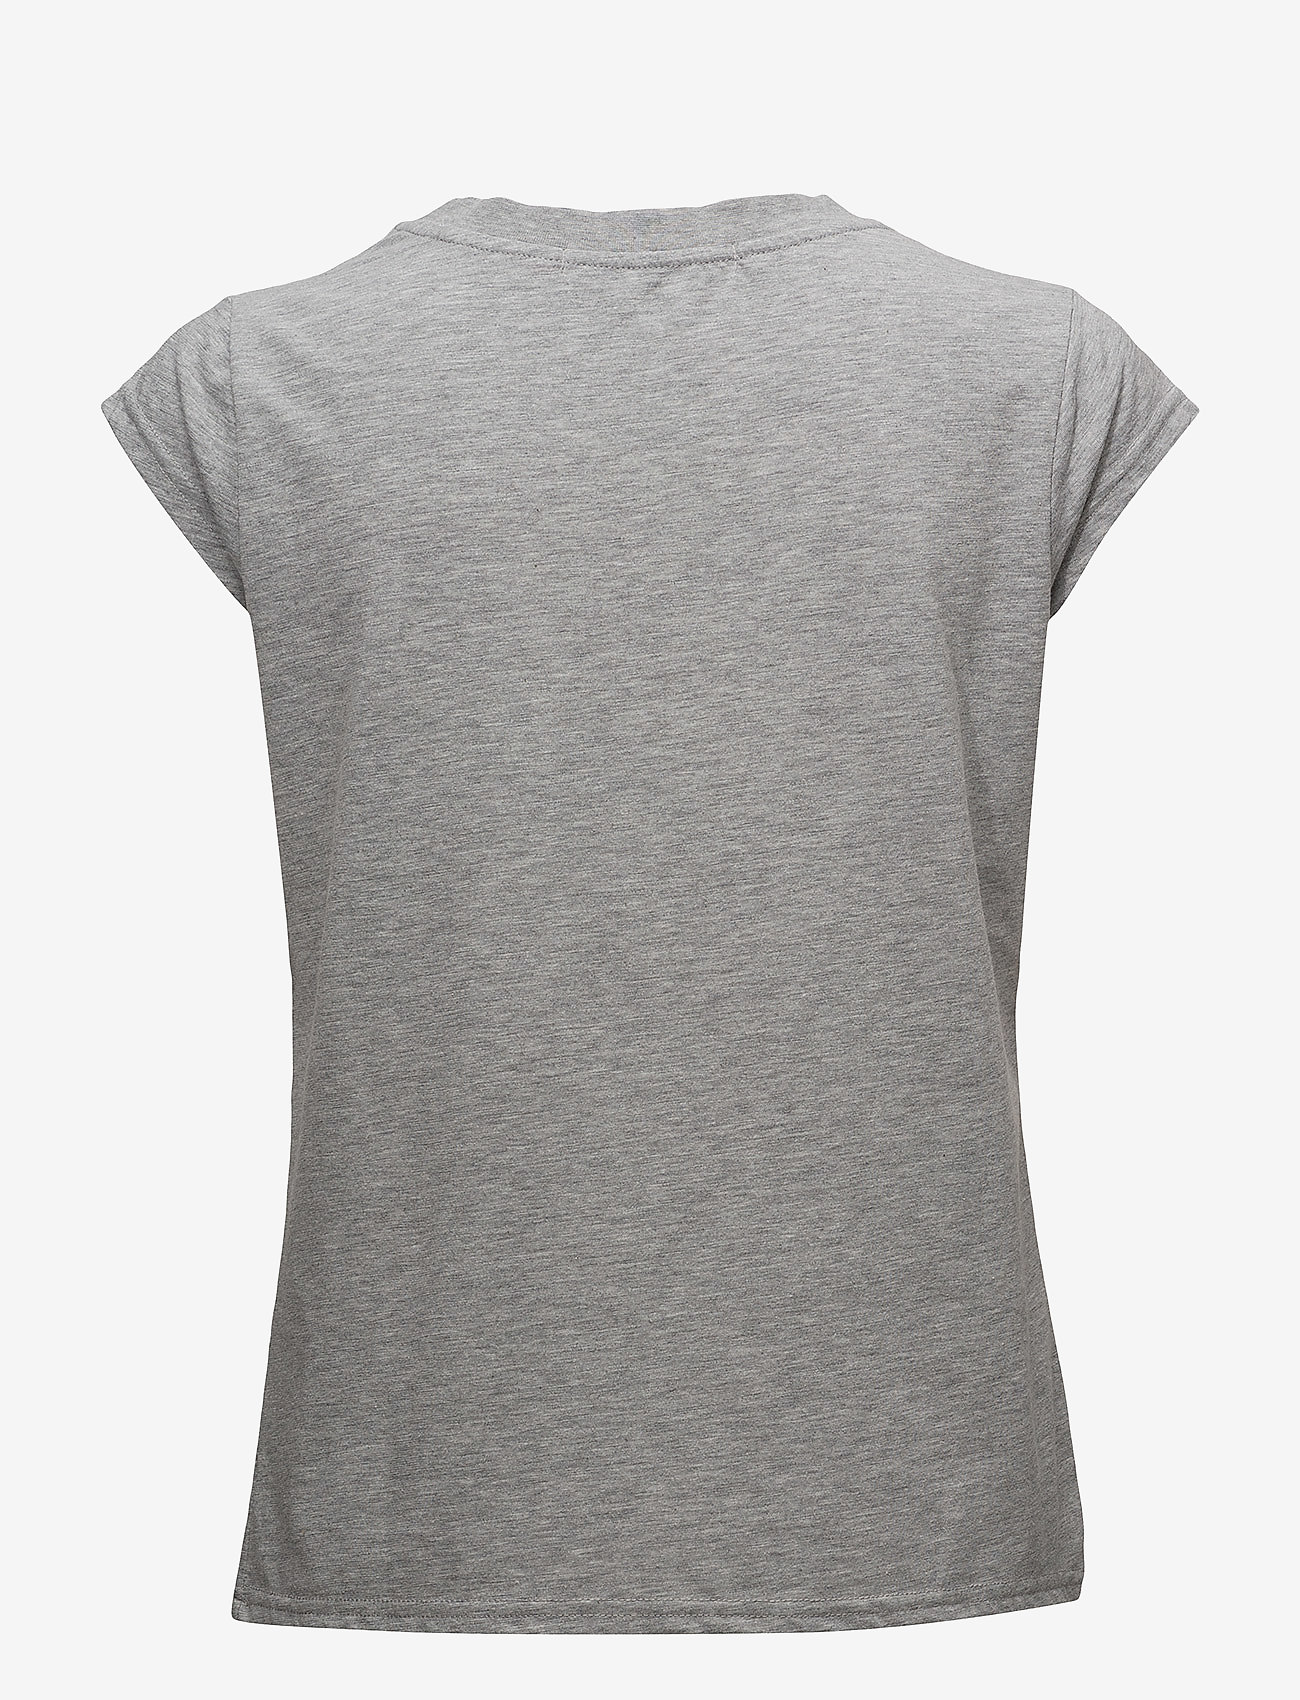 Coster Copenhagen - CC Heart basic t-shirt - t-shirts - light grey melange - 1